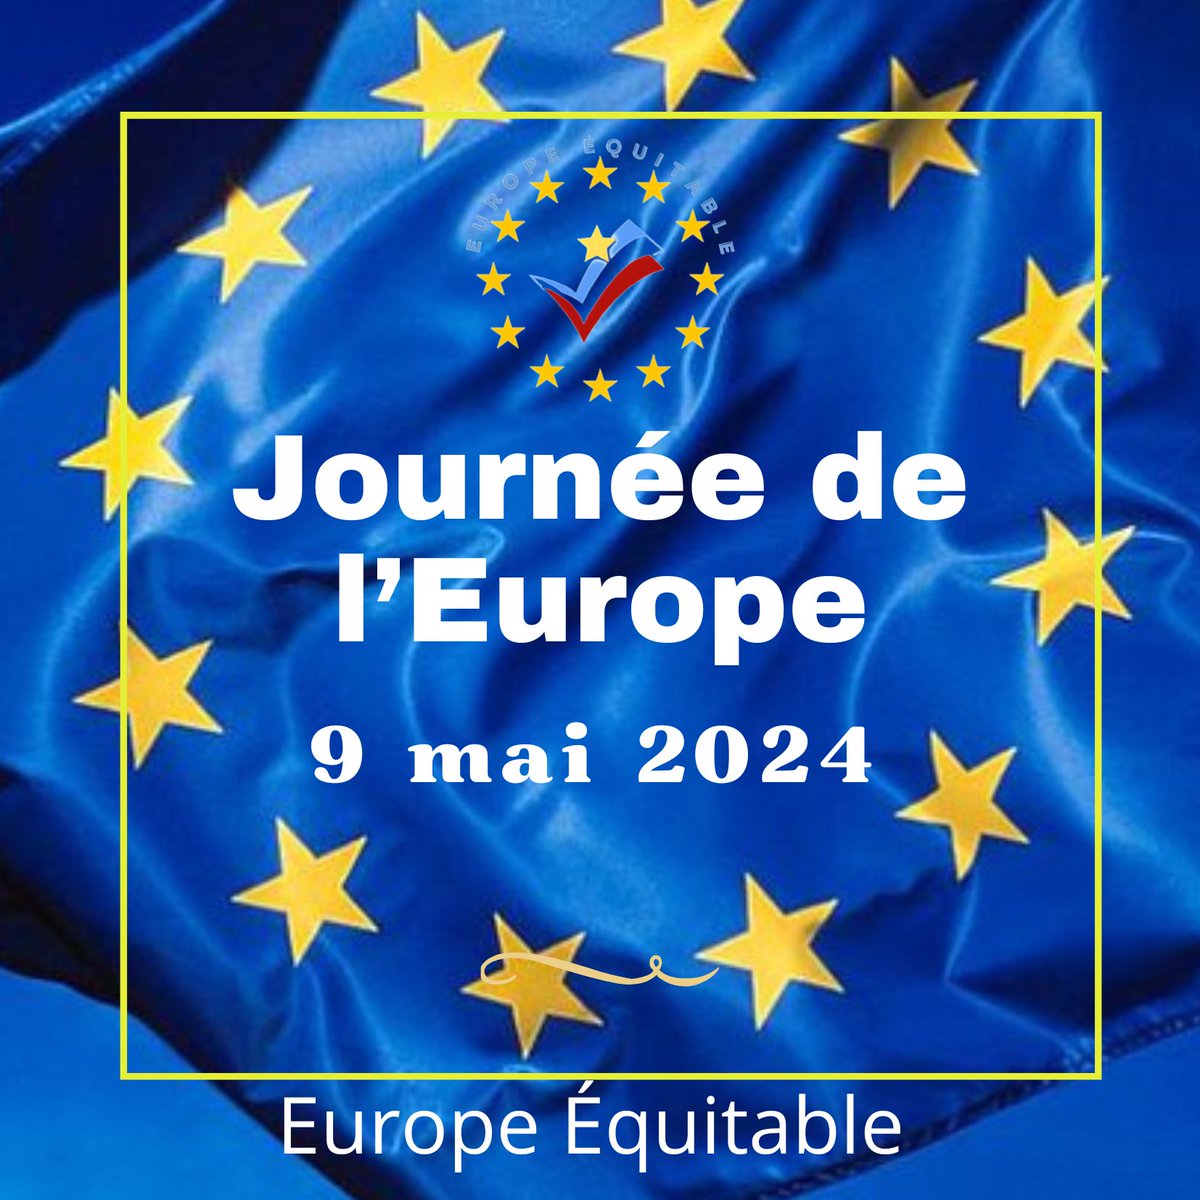 Le 9 mai, une date symbolique La Journée de l’Europe est célébrée le 9 mai dans l’ensemble des États membres afin de rendre hommage à la date fondatrice que fût le 9 mai 1950. Robert Schuman a présenté ce jour-là sa proposition relative à une organisation de l’Europe : la «…